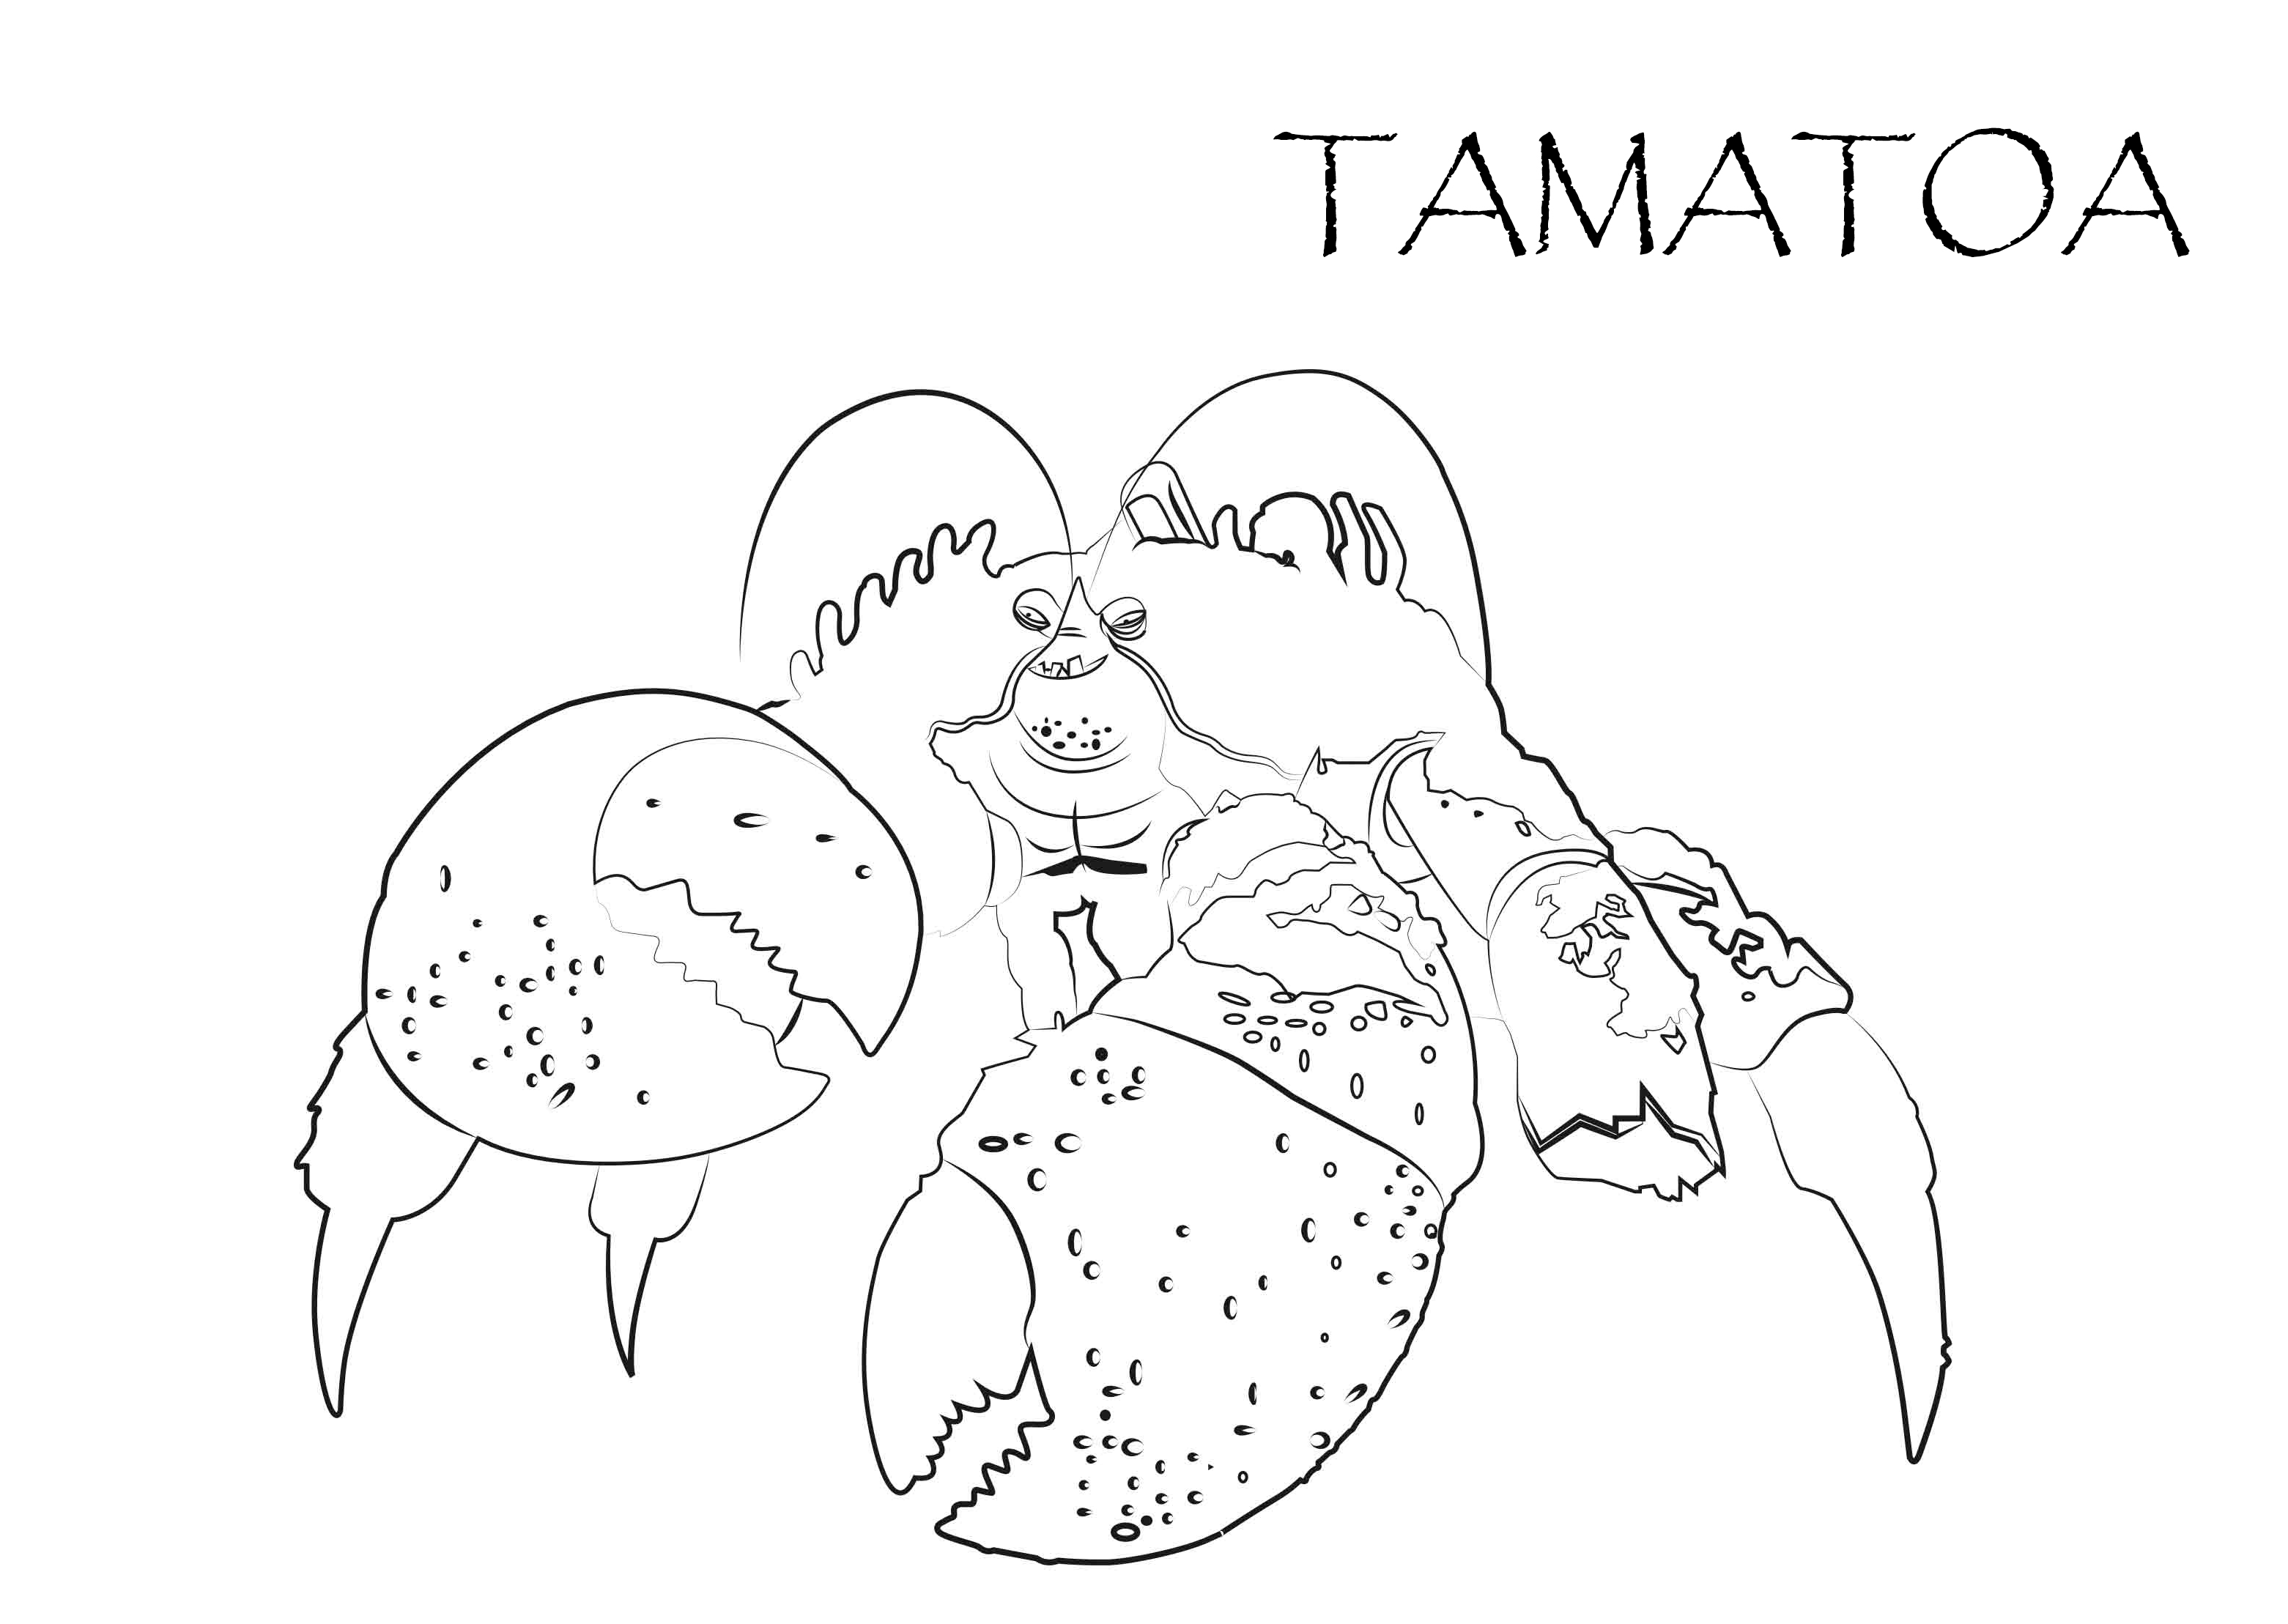 Dibujo para colorear del personaje del cangrejo Tamatoa de la película Vaiana Un mar de aventuras de Disney